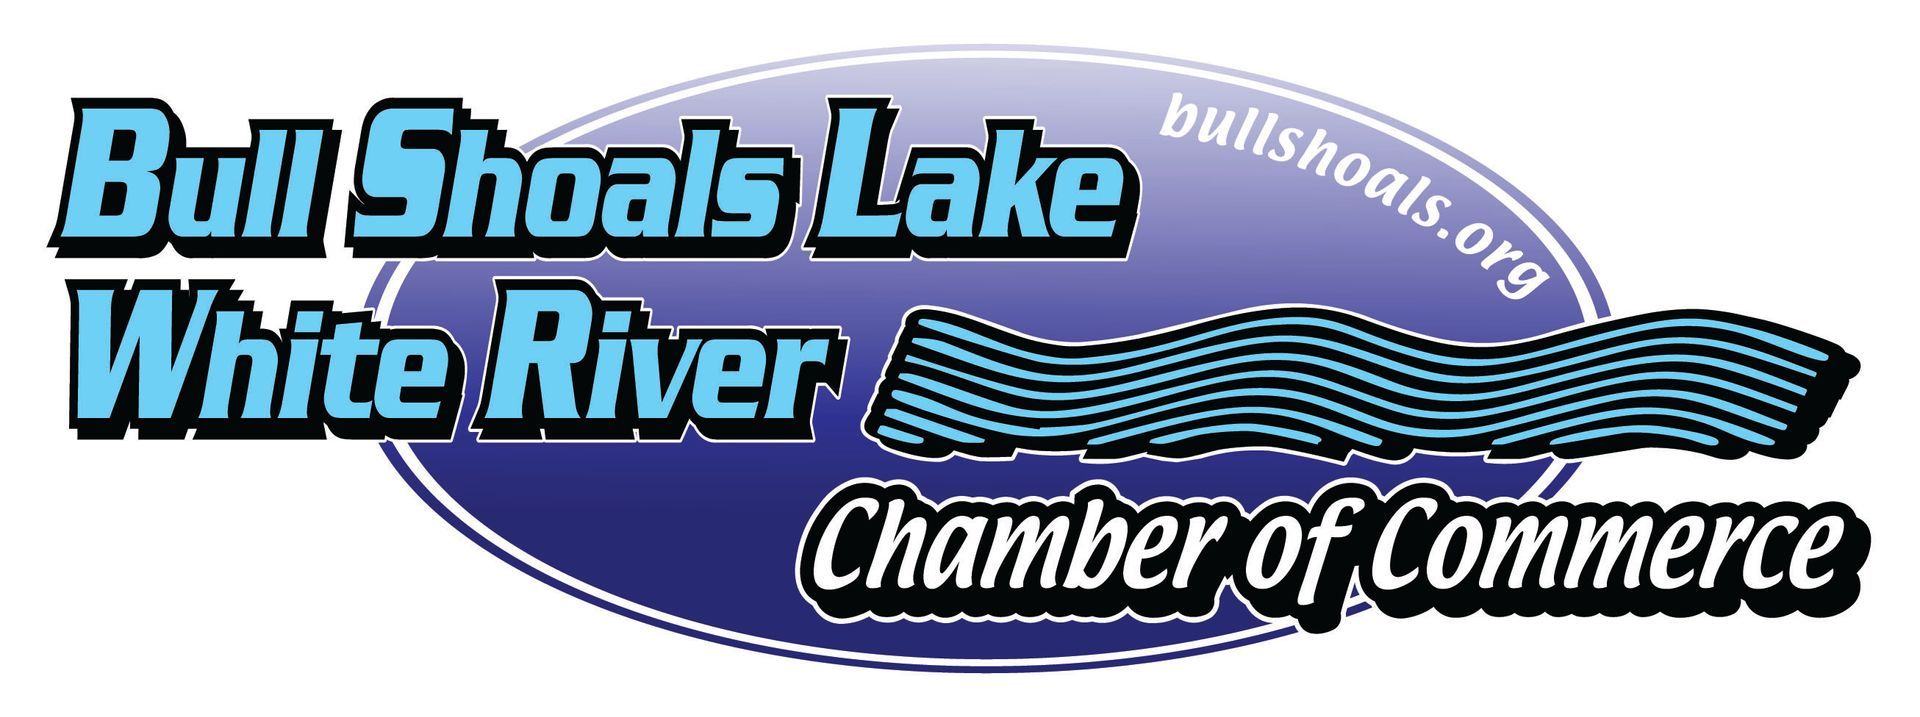 A logo for bull shoals lake white river chamber of commerce